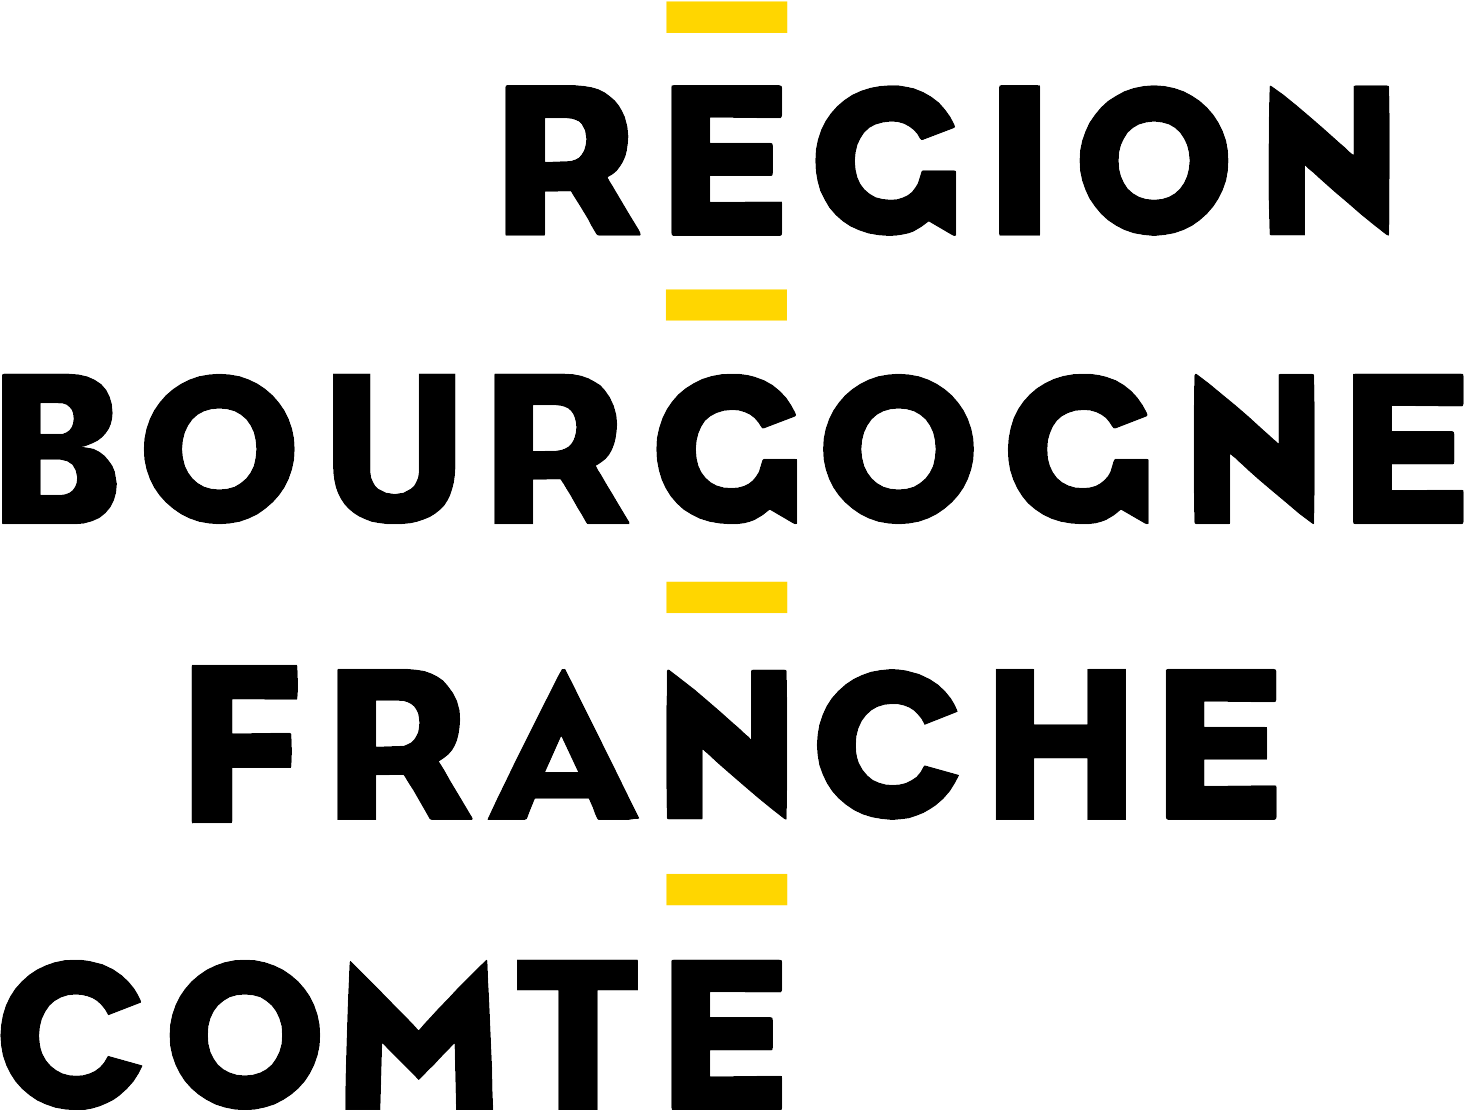 Région Bourgogne Franche-Comté